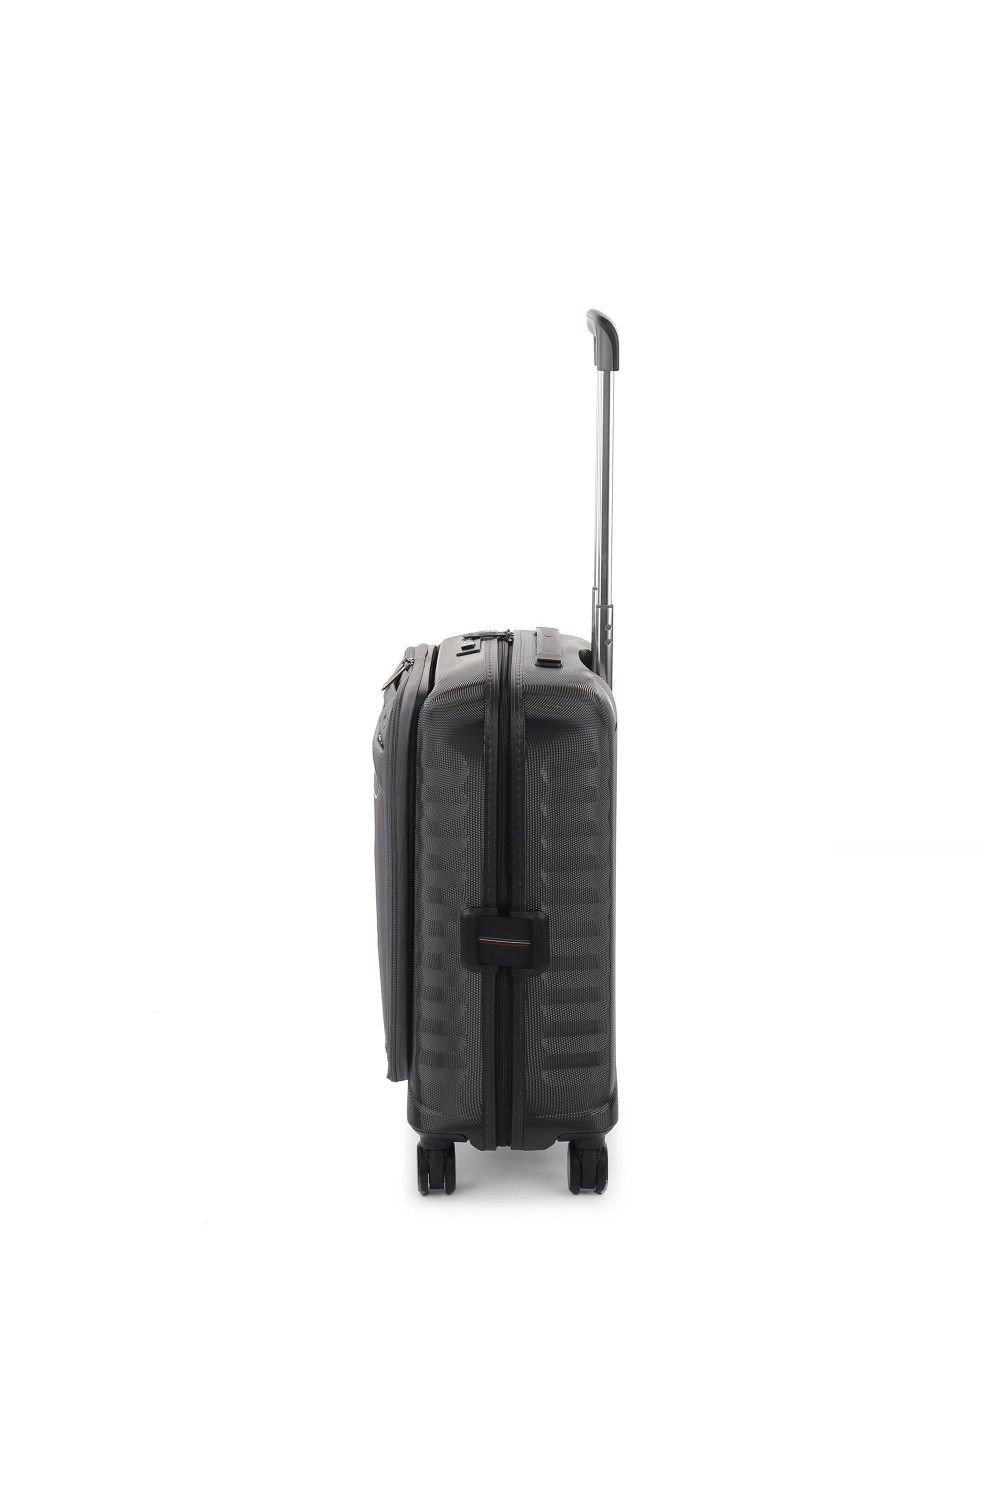 Roncato bagages à main D-Premium 55x40x20/23 extensible anthracite